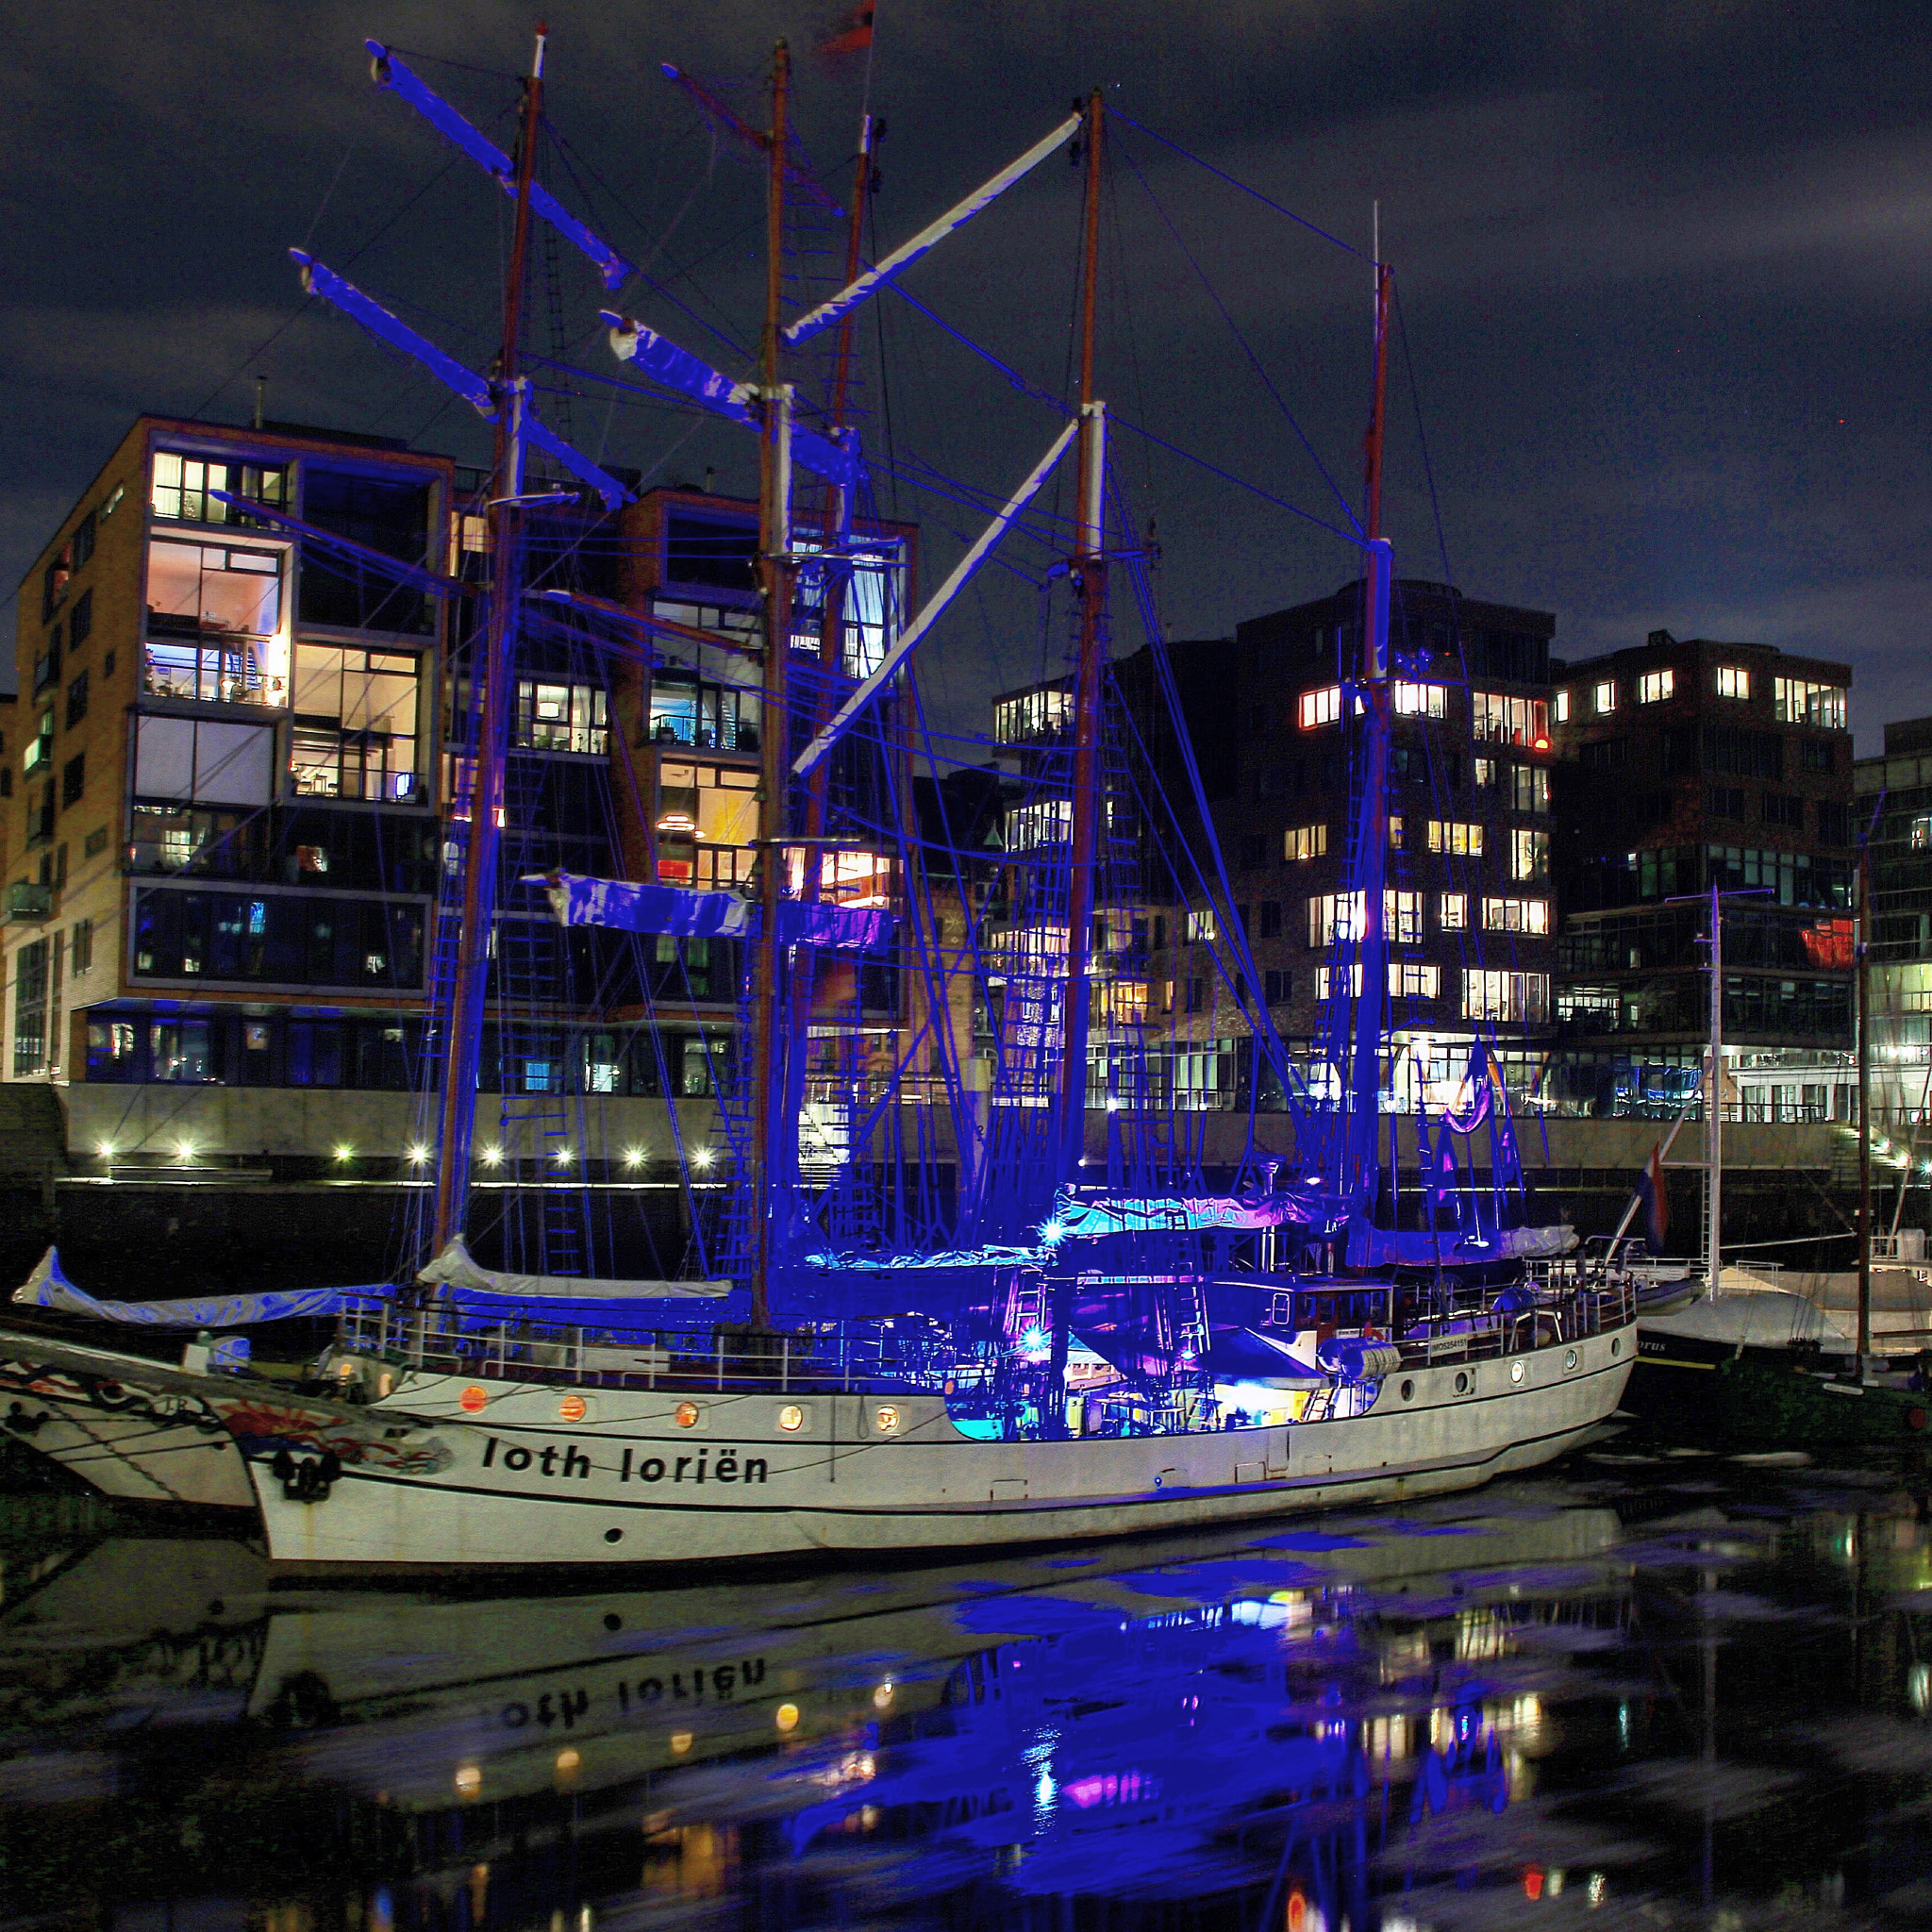 Canon 18-200mm sample photo. Abends werden vom deck aus die masten blau angestrahlt. hamburg hafen city photography